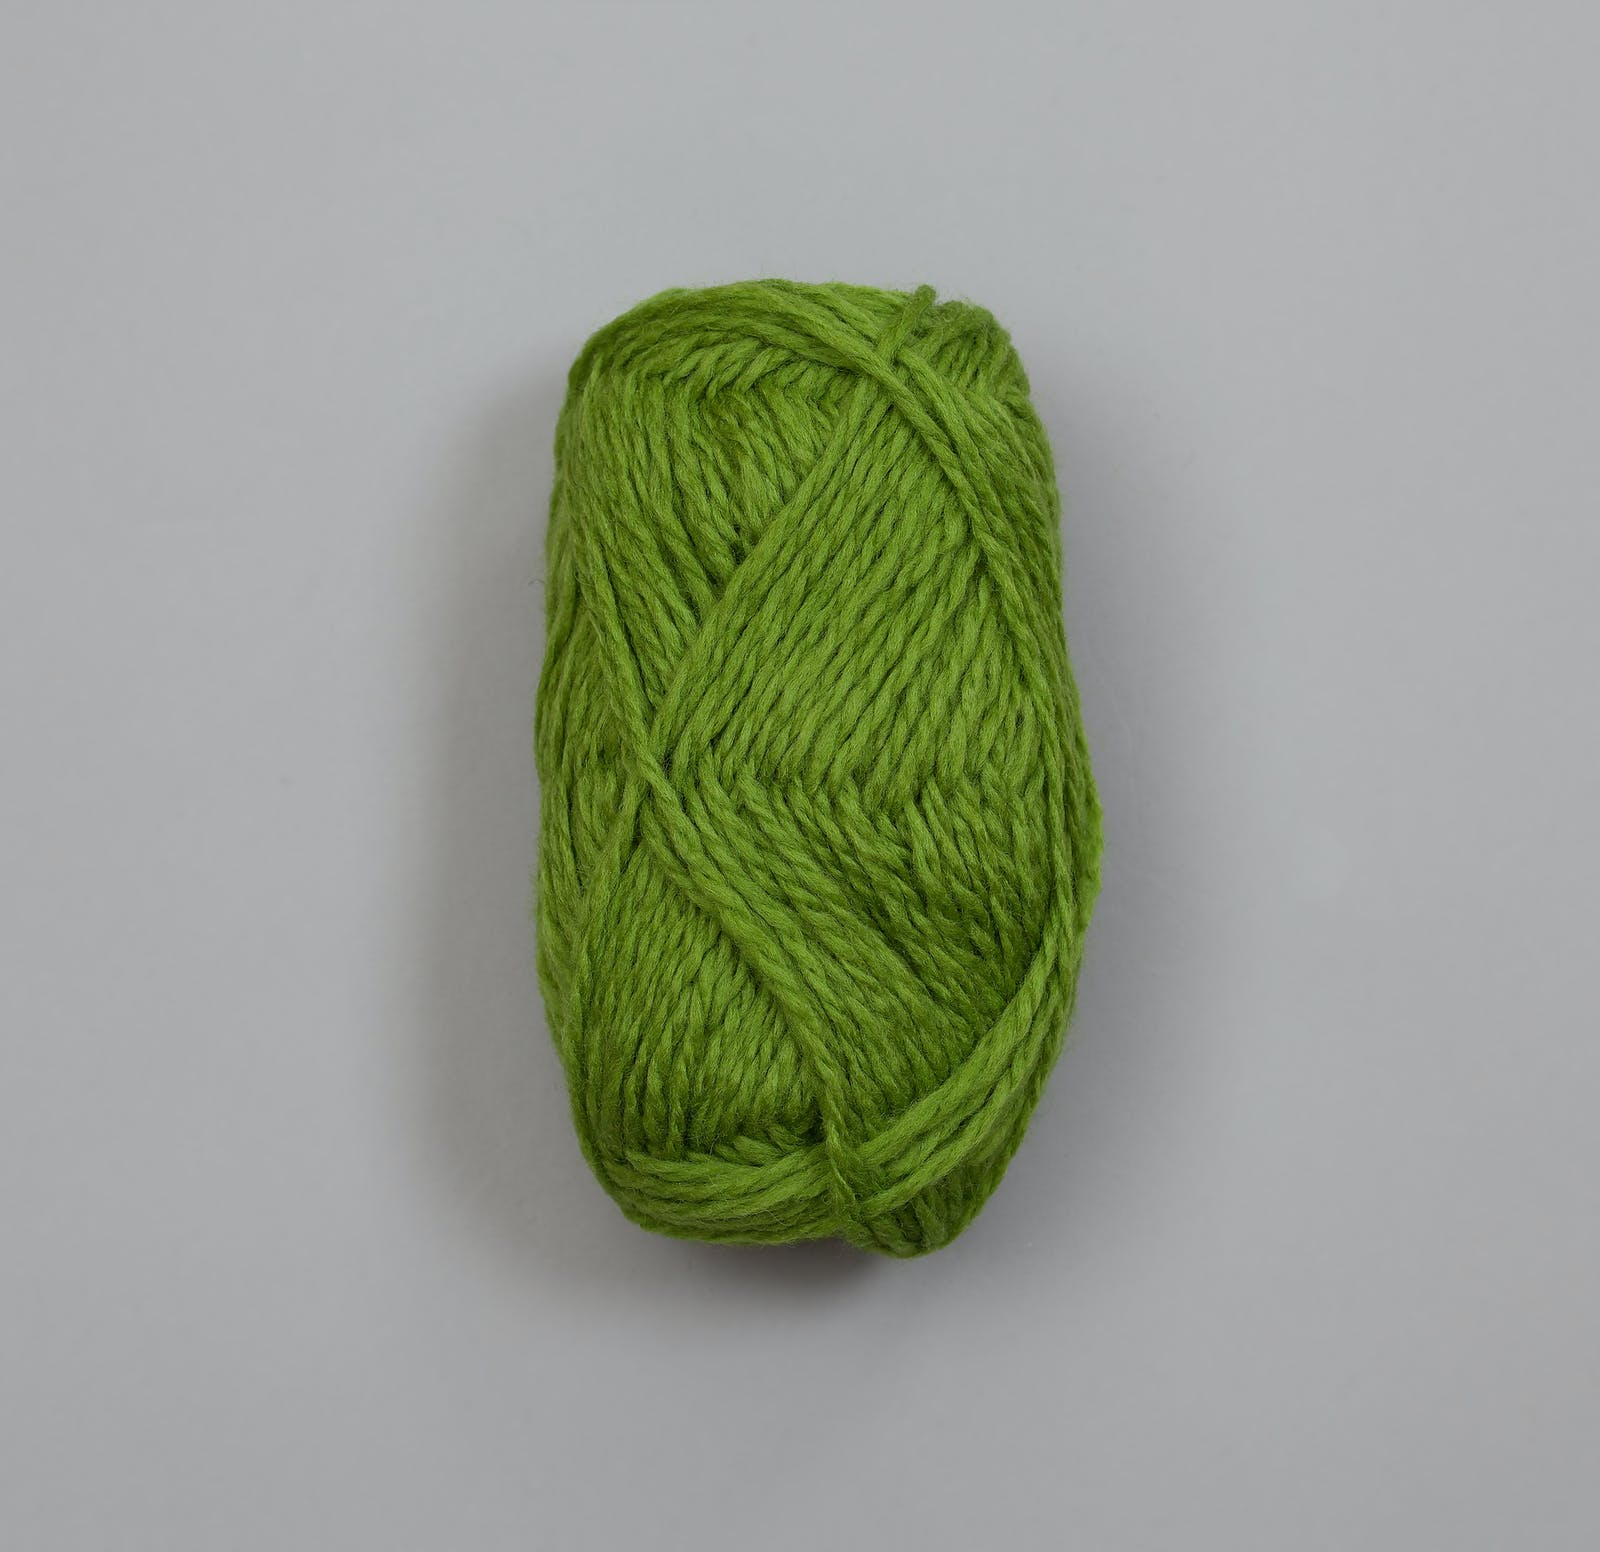 Vams - Eplegrønn / Apfelgrün (80)